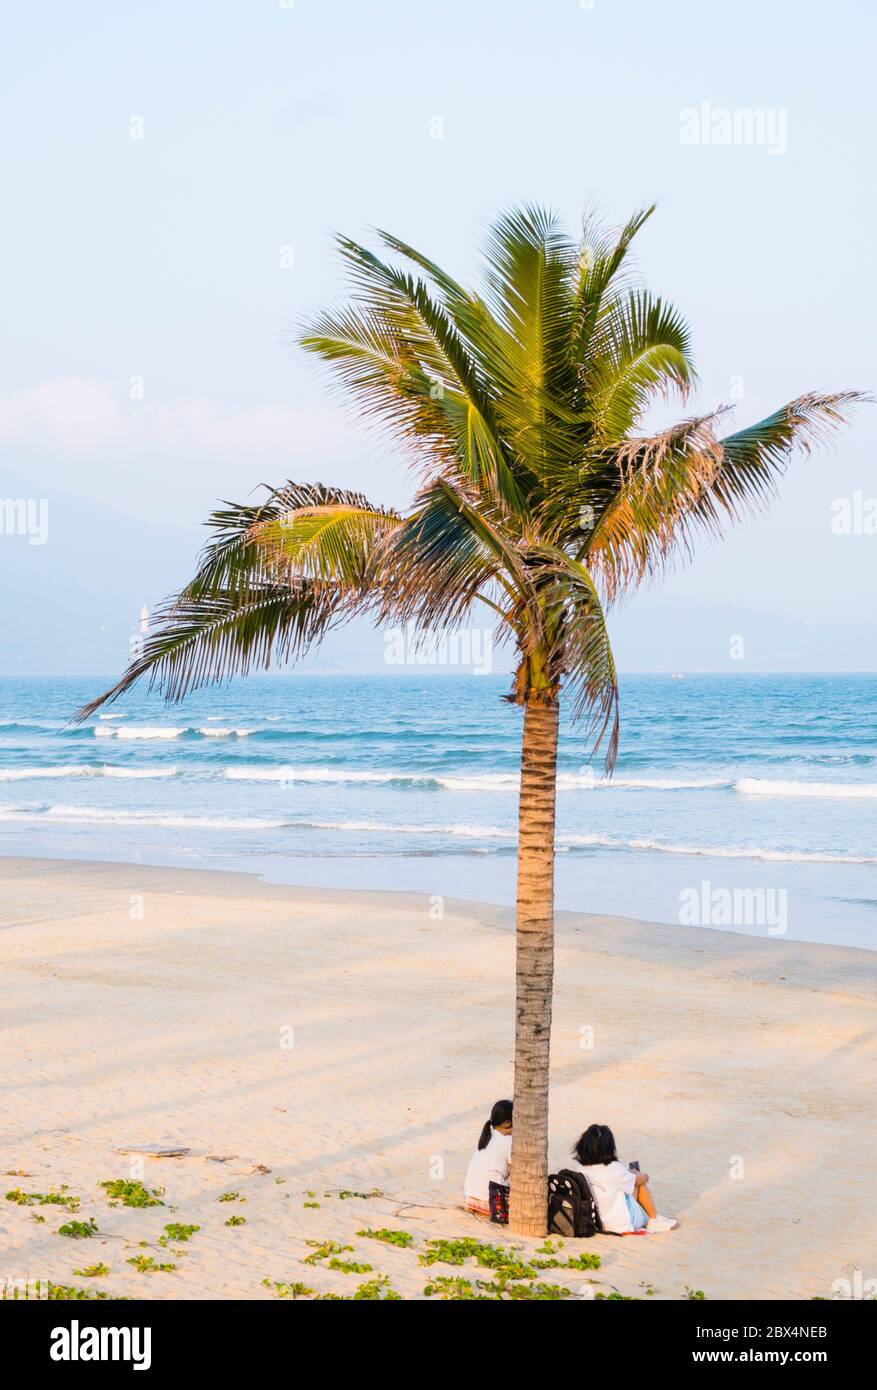 My Khe beach, Danang, Vietnam Stock Photo